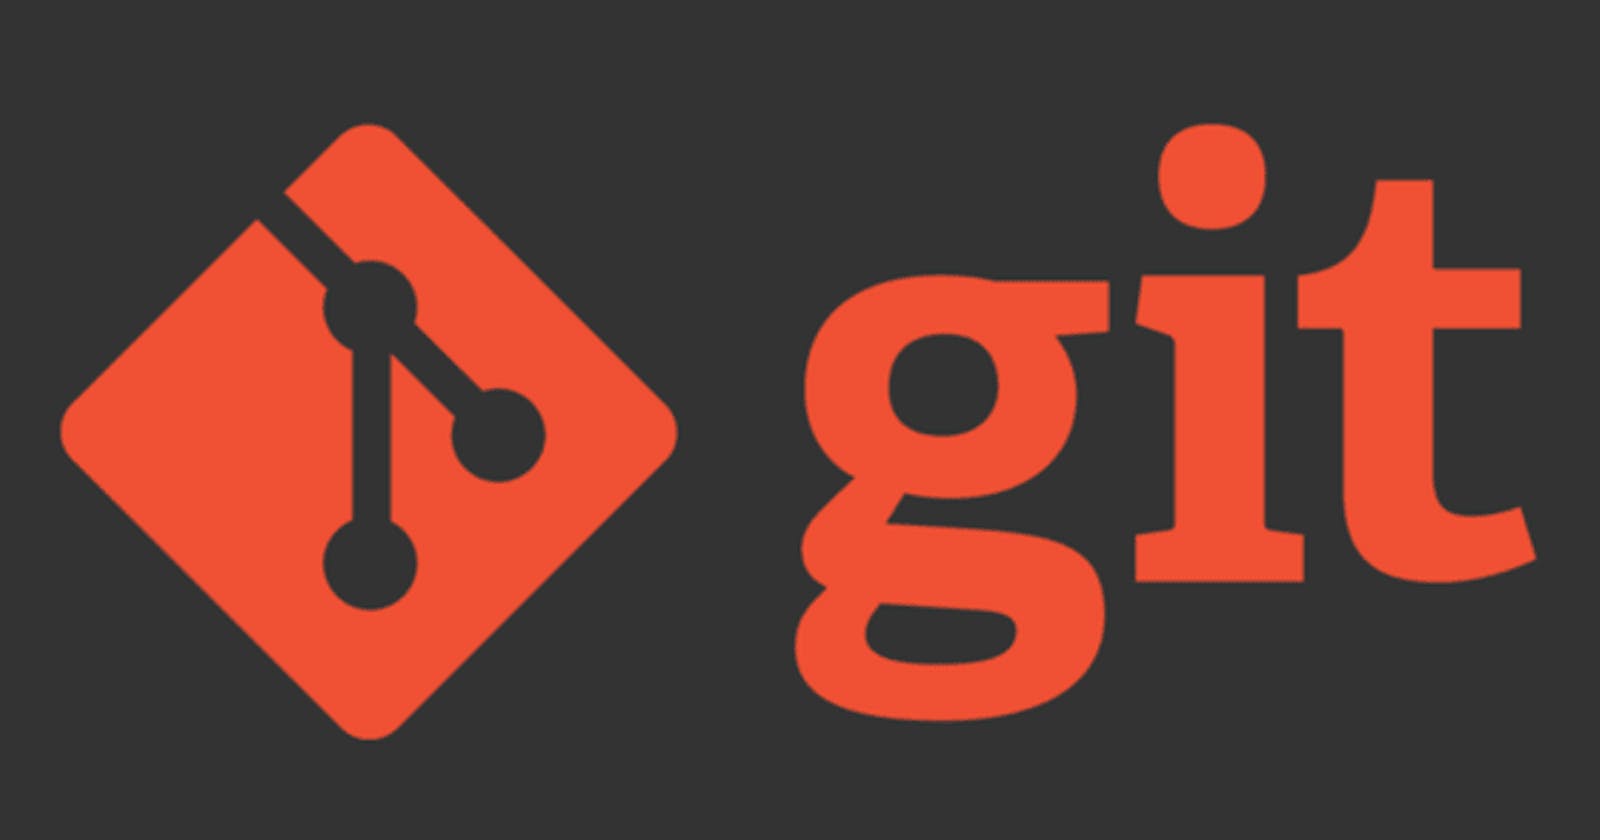 Basic Git Commands